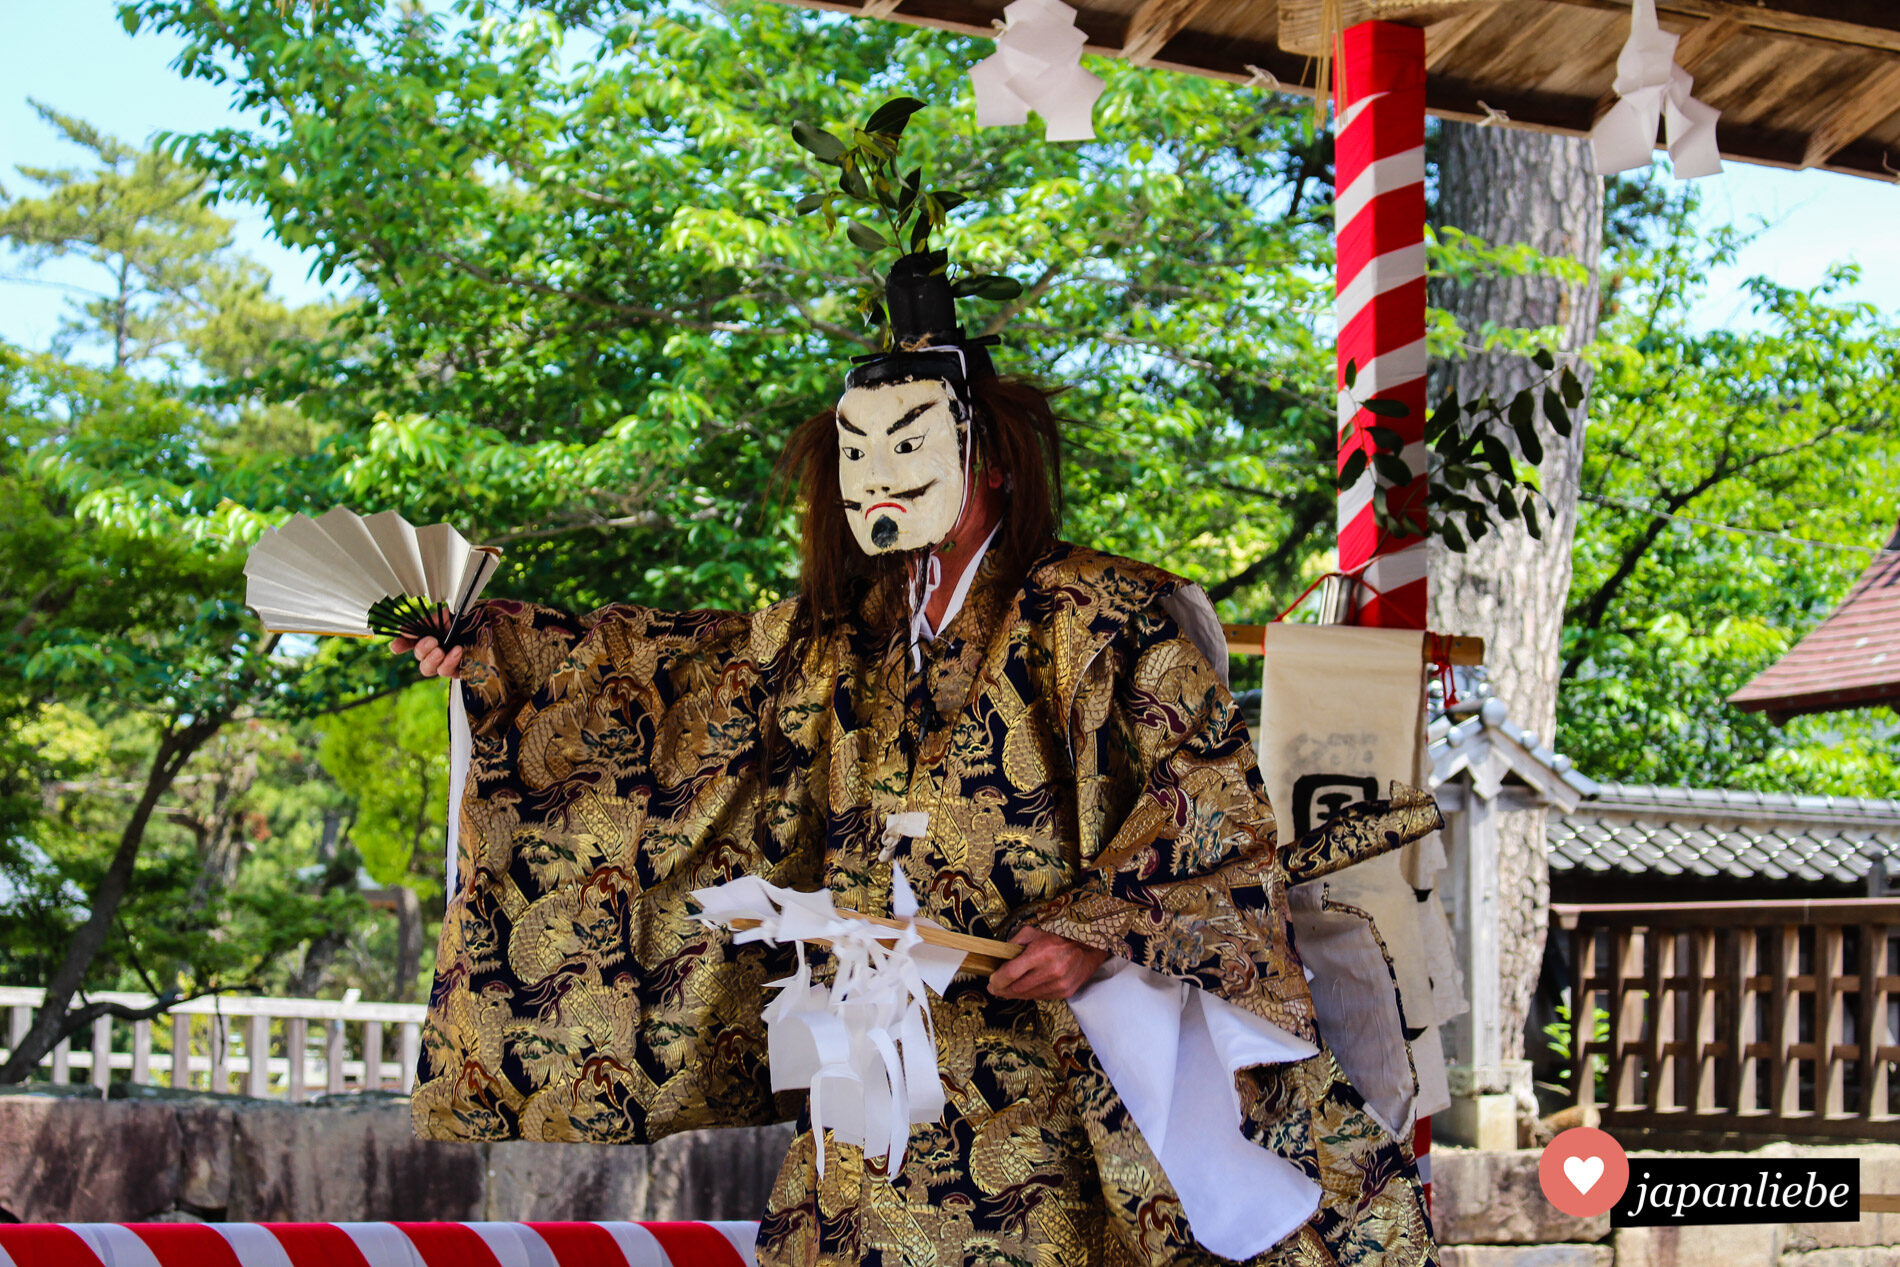 Am Izumo-taisha-Schrein findet eine kagura-Theater-Aufführung statt.